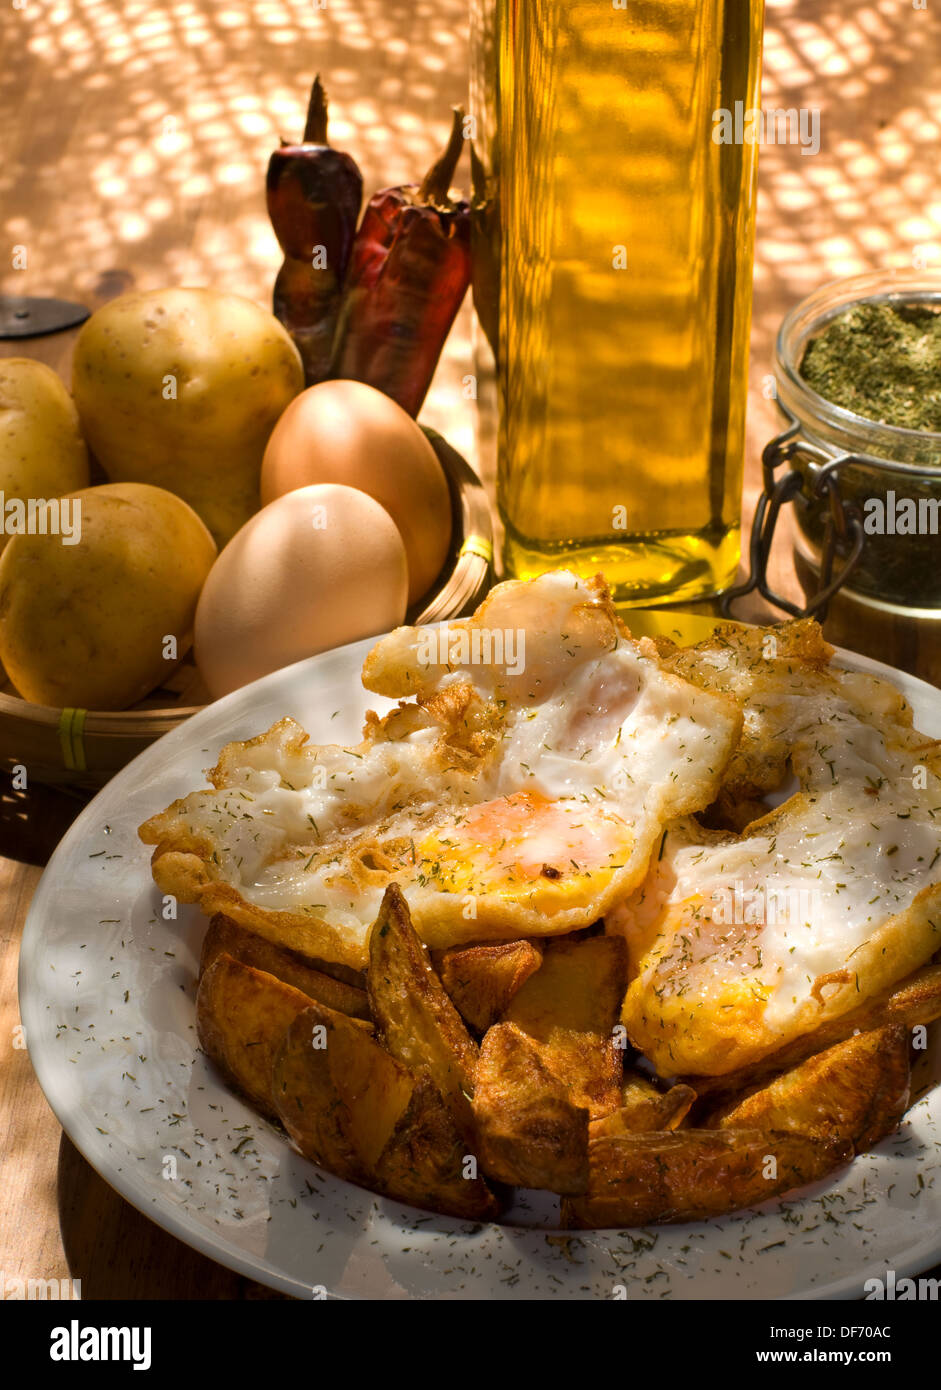 La cocina española. Huevos fritos con patatas servido en una placa blanca. Foto de stock